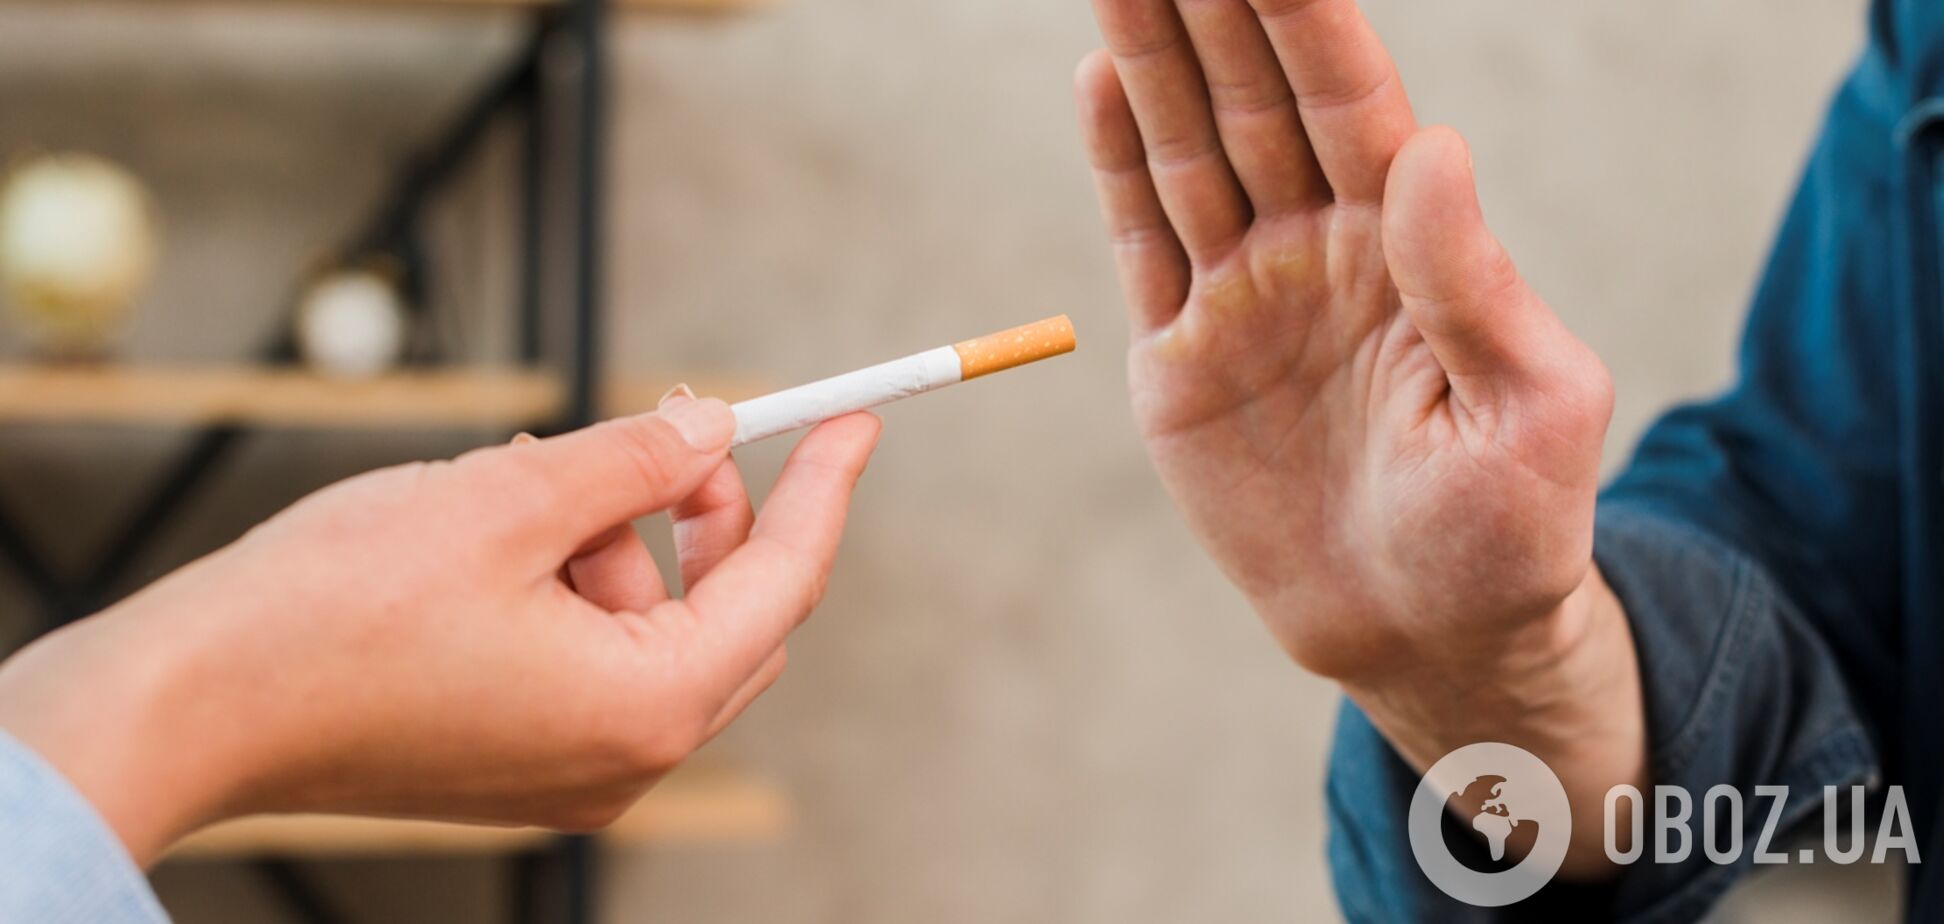 Умирают 8 миллионов человек в год: как мир борется с эпидемией курения